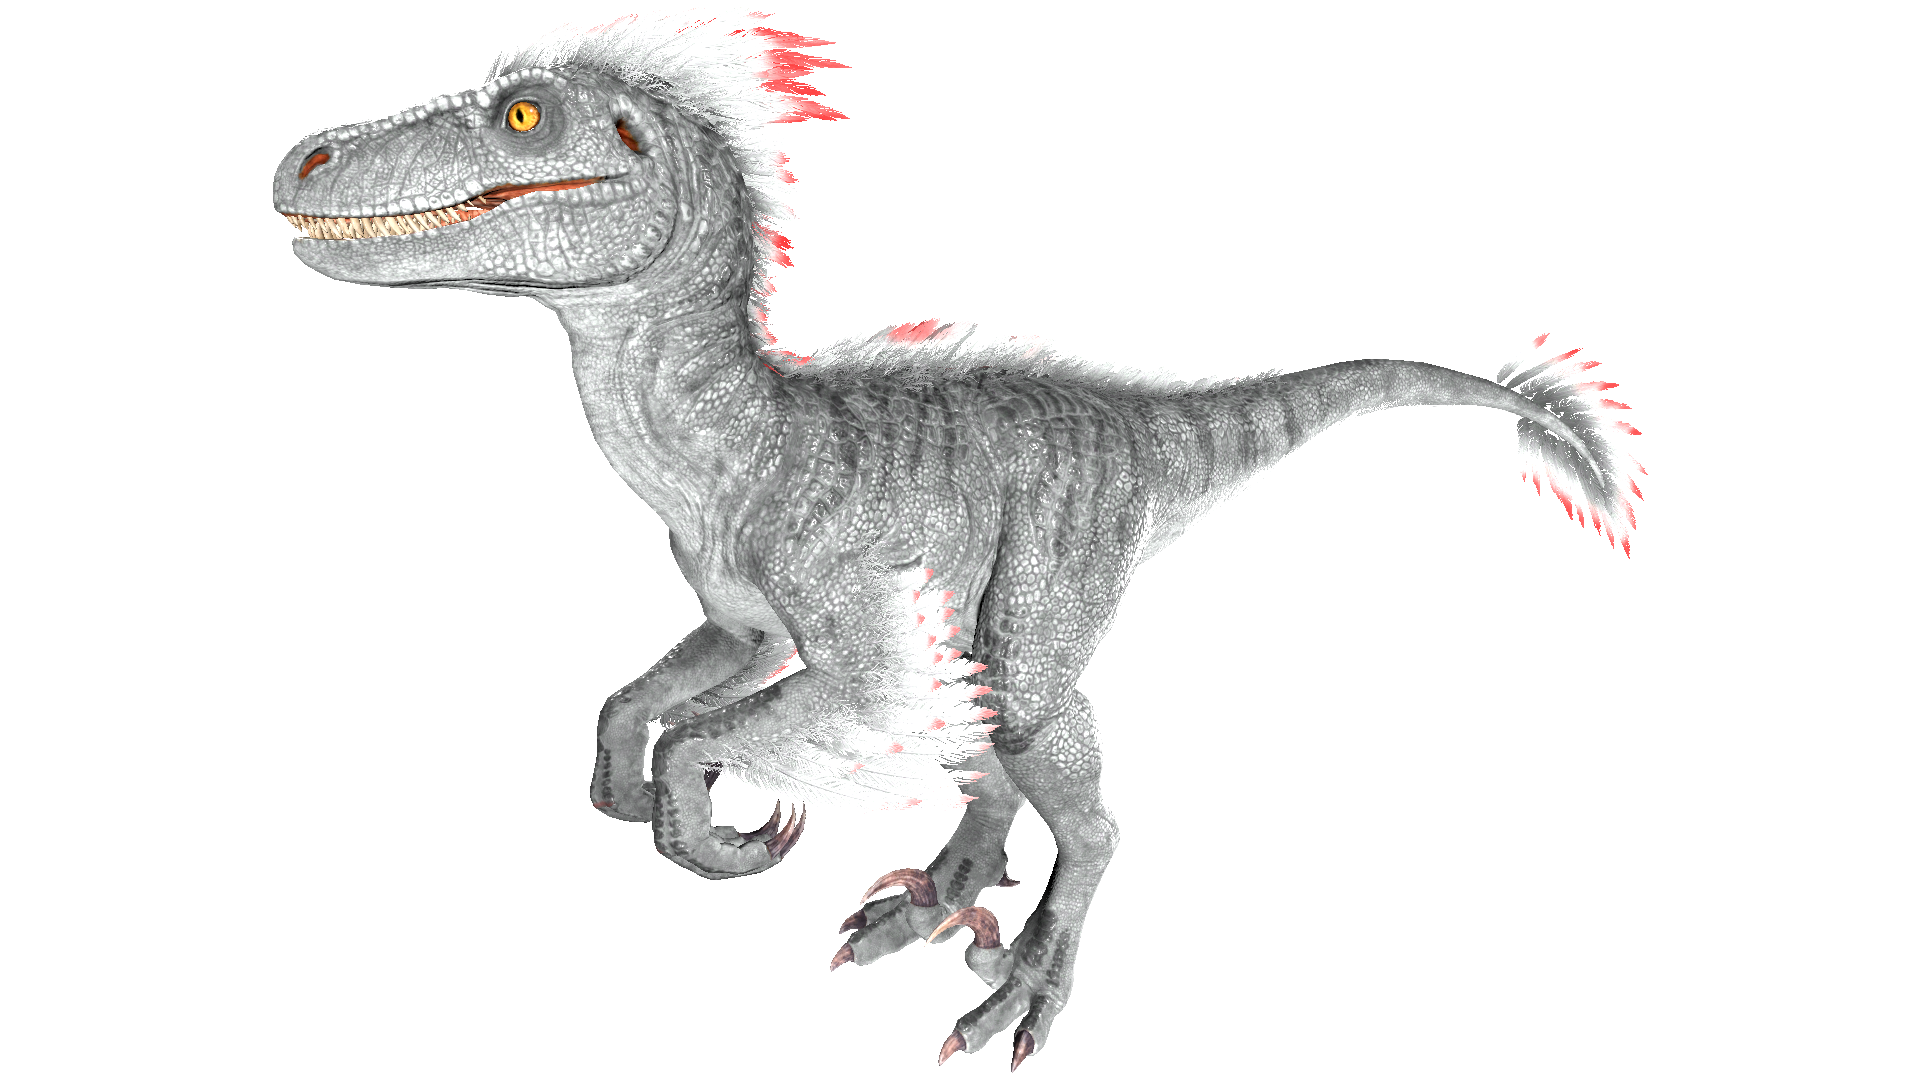 Alpha Raptor Official Ark Survival Evolved Wiki